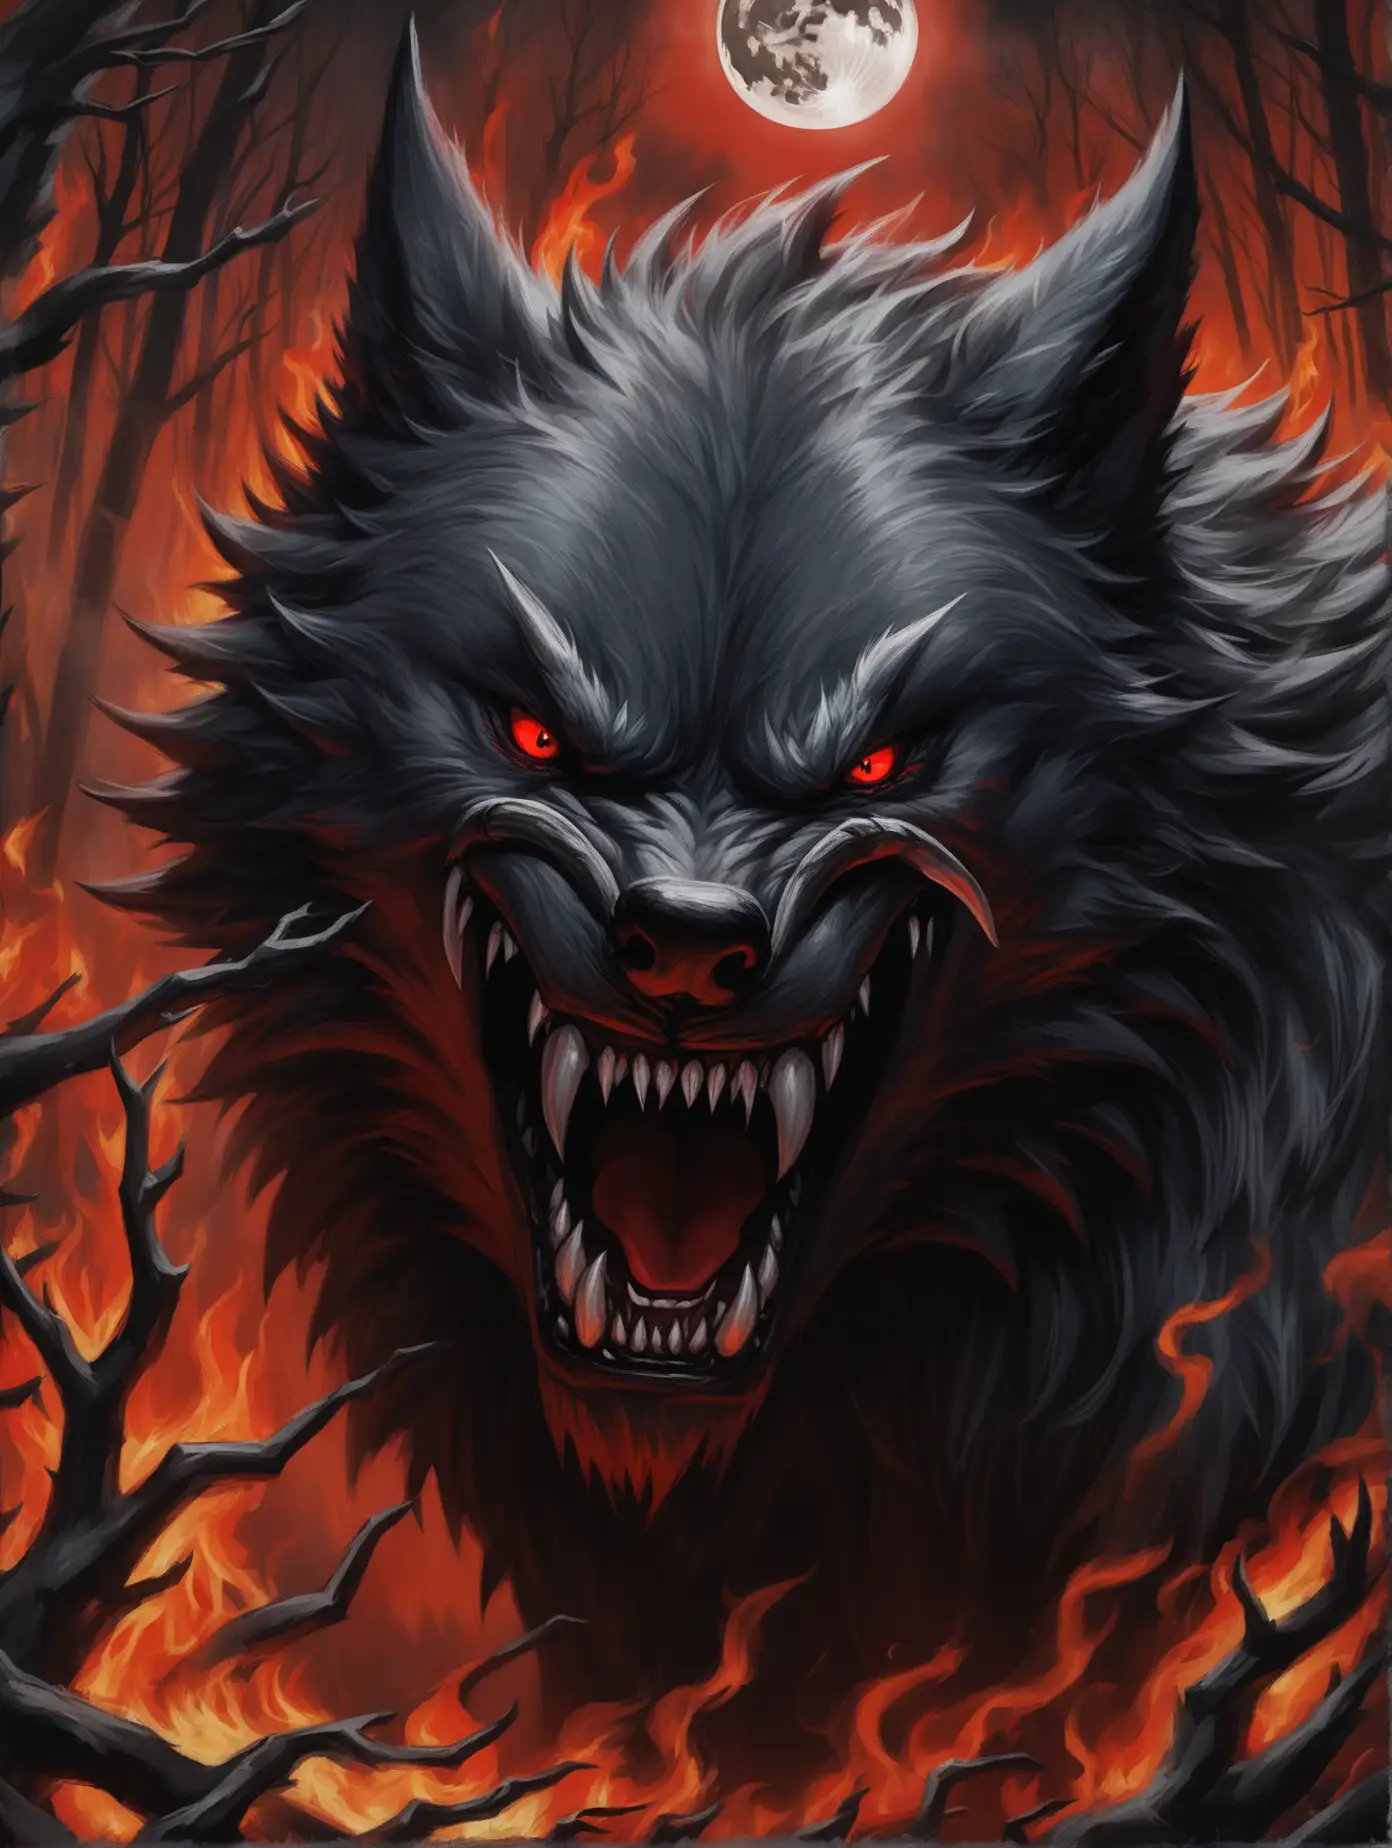 Черный большой волк, огненно-красные глаза, ярость, звериный оскал, клыки, черный дым вокруг, крупный план, фон черный лес в полнолуние, детализация, реализм